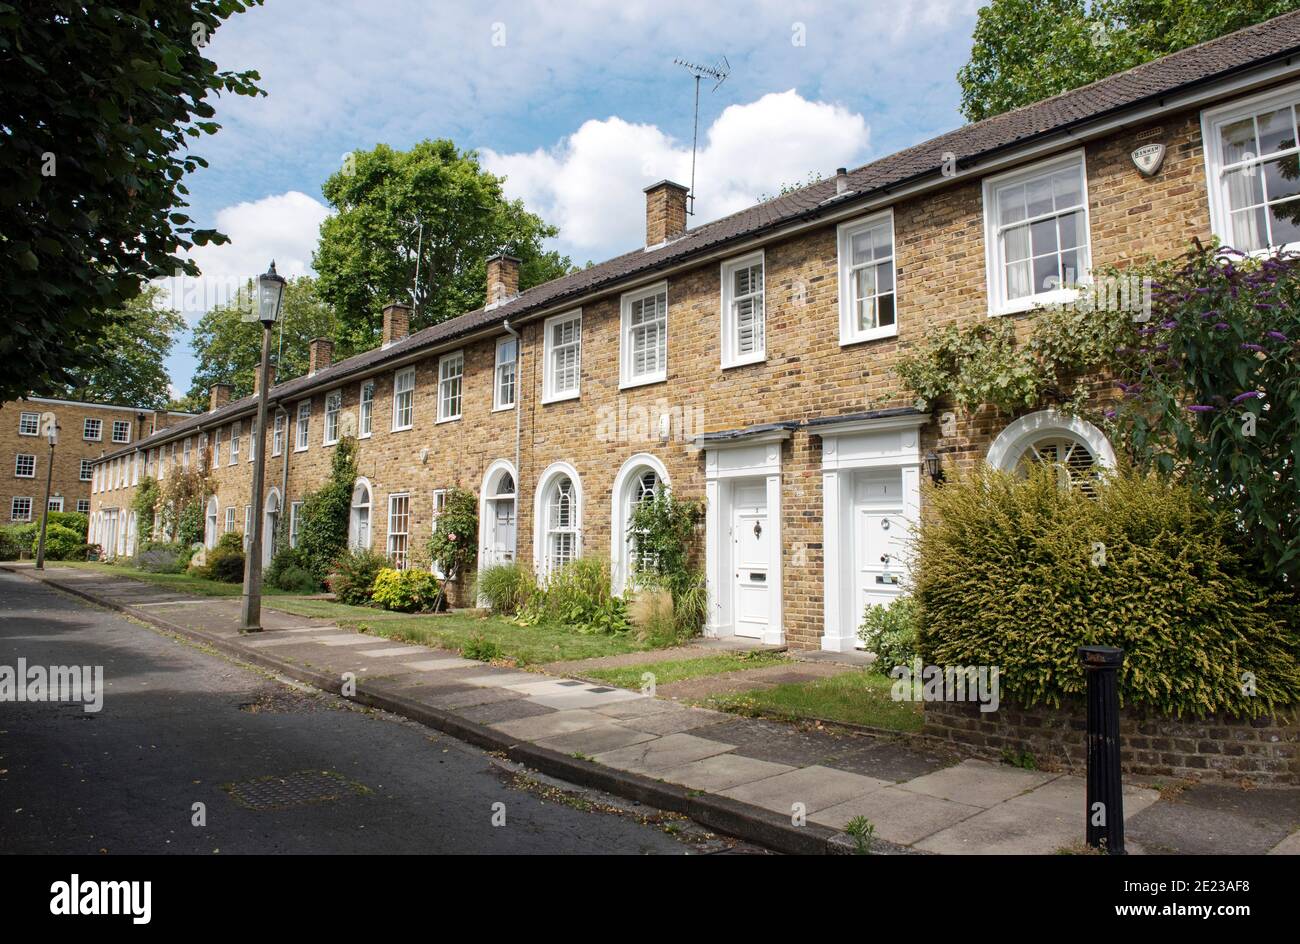 Rangée de deux étages de maisons néo-géorgiennes en terrasse montrant de beaux jardins de devant, Hopping Lane, Canonbury, London Borough of Islington Banque D'Images